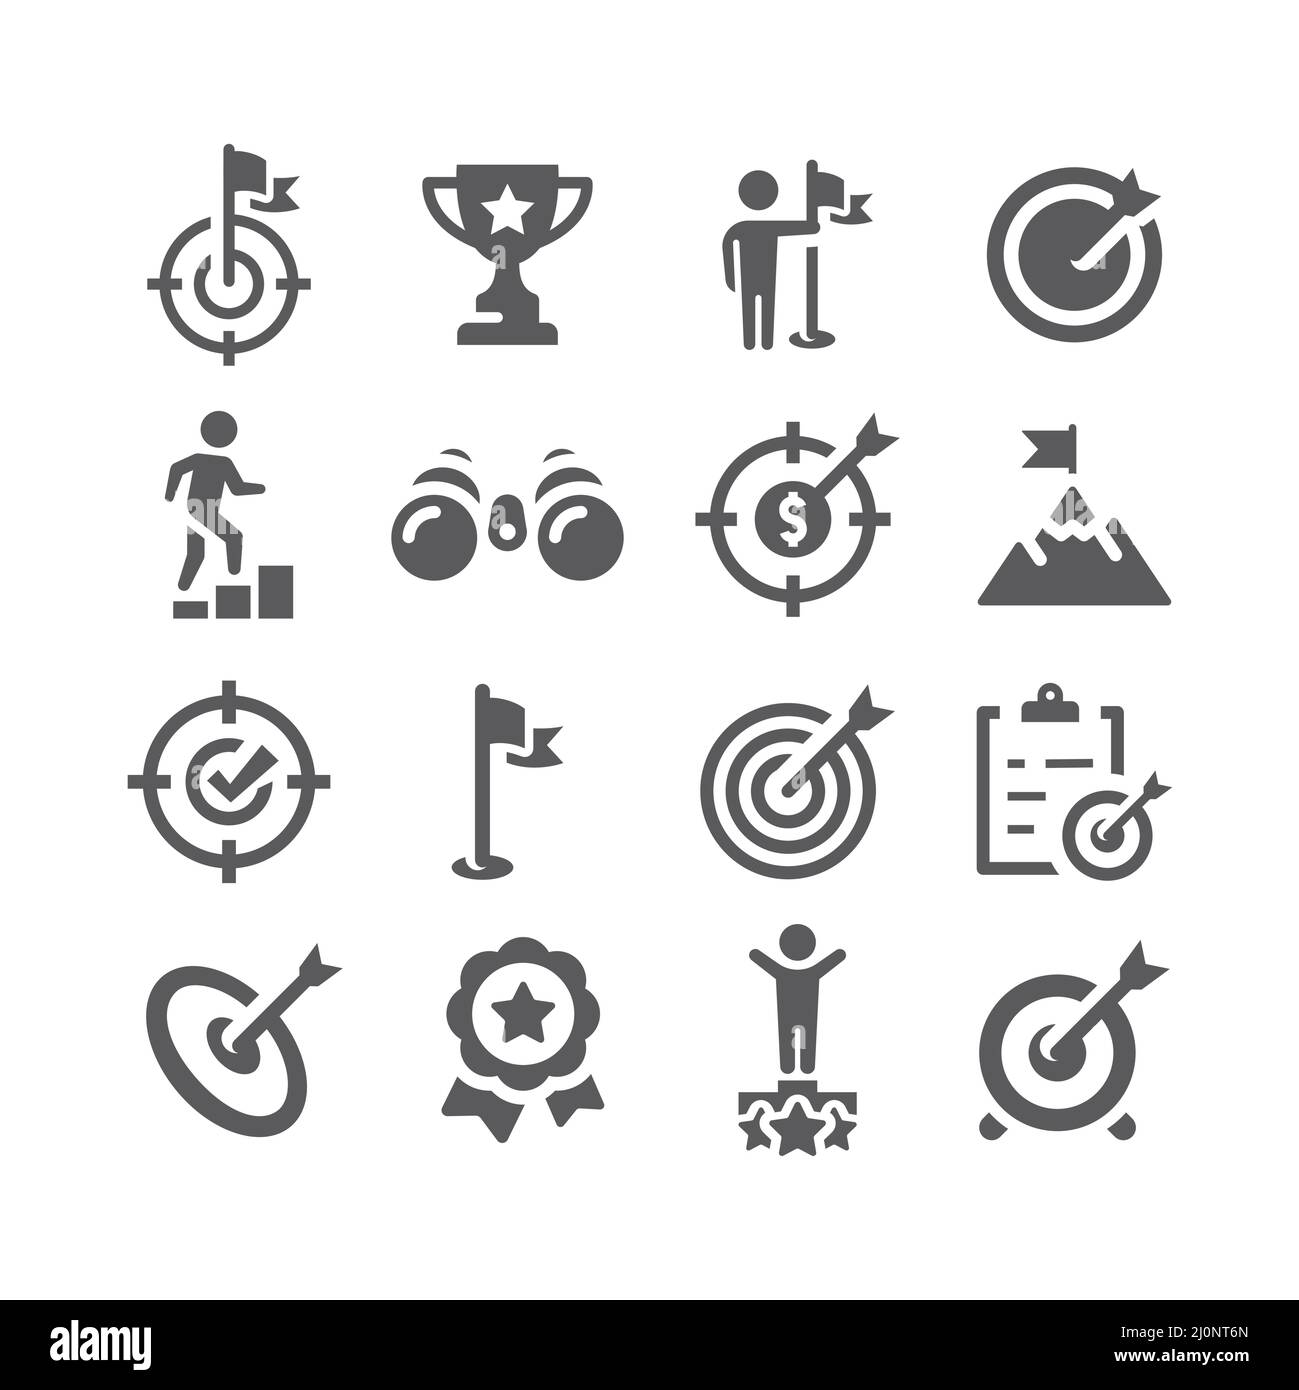 Symbolsatz für Geschäftsziele und Erfolge. Symbole mit Spitzen-, Flag-, Ziel- und Pfeilfüllung. Stock Vektor